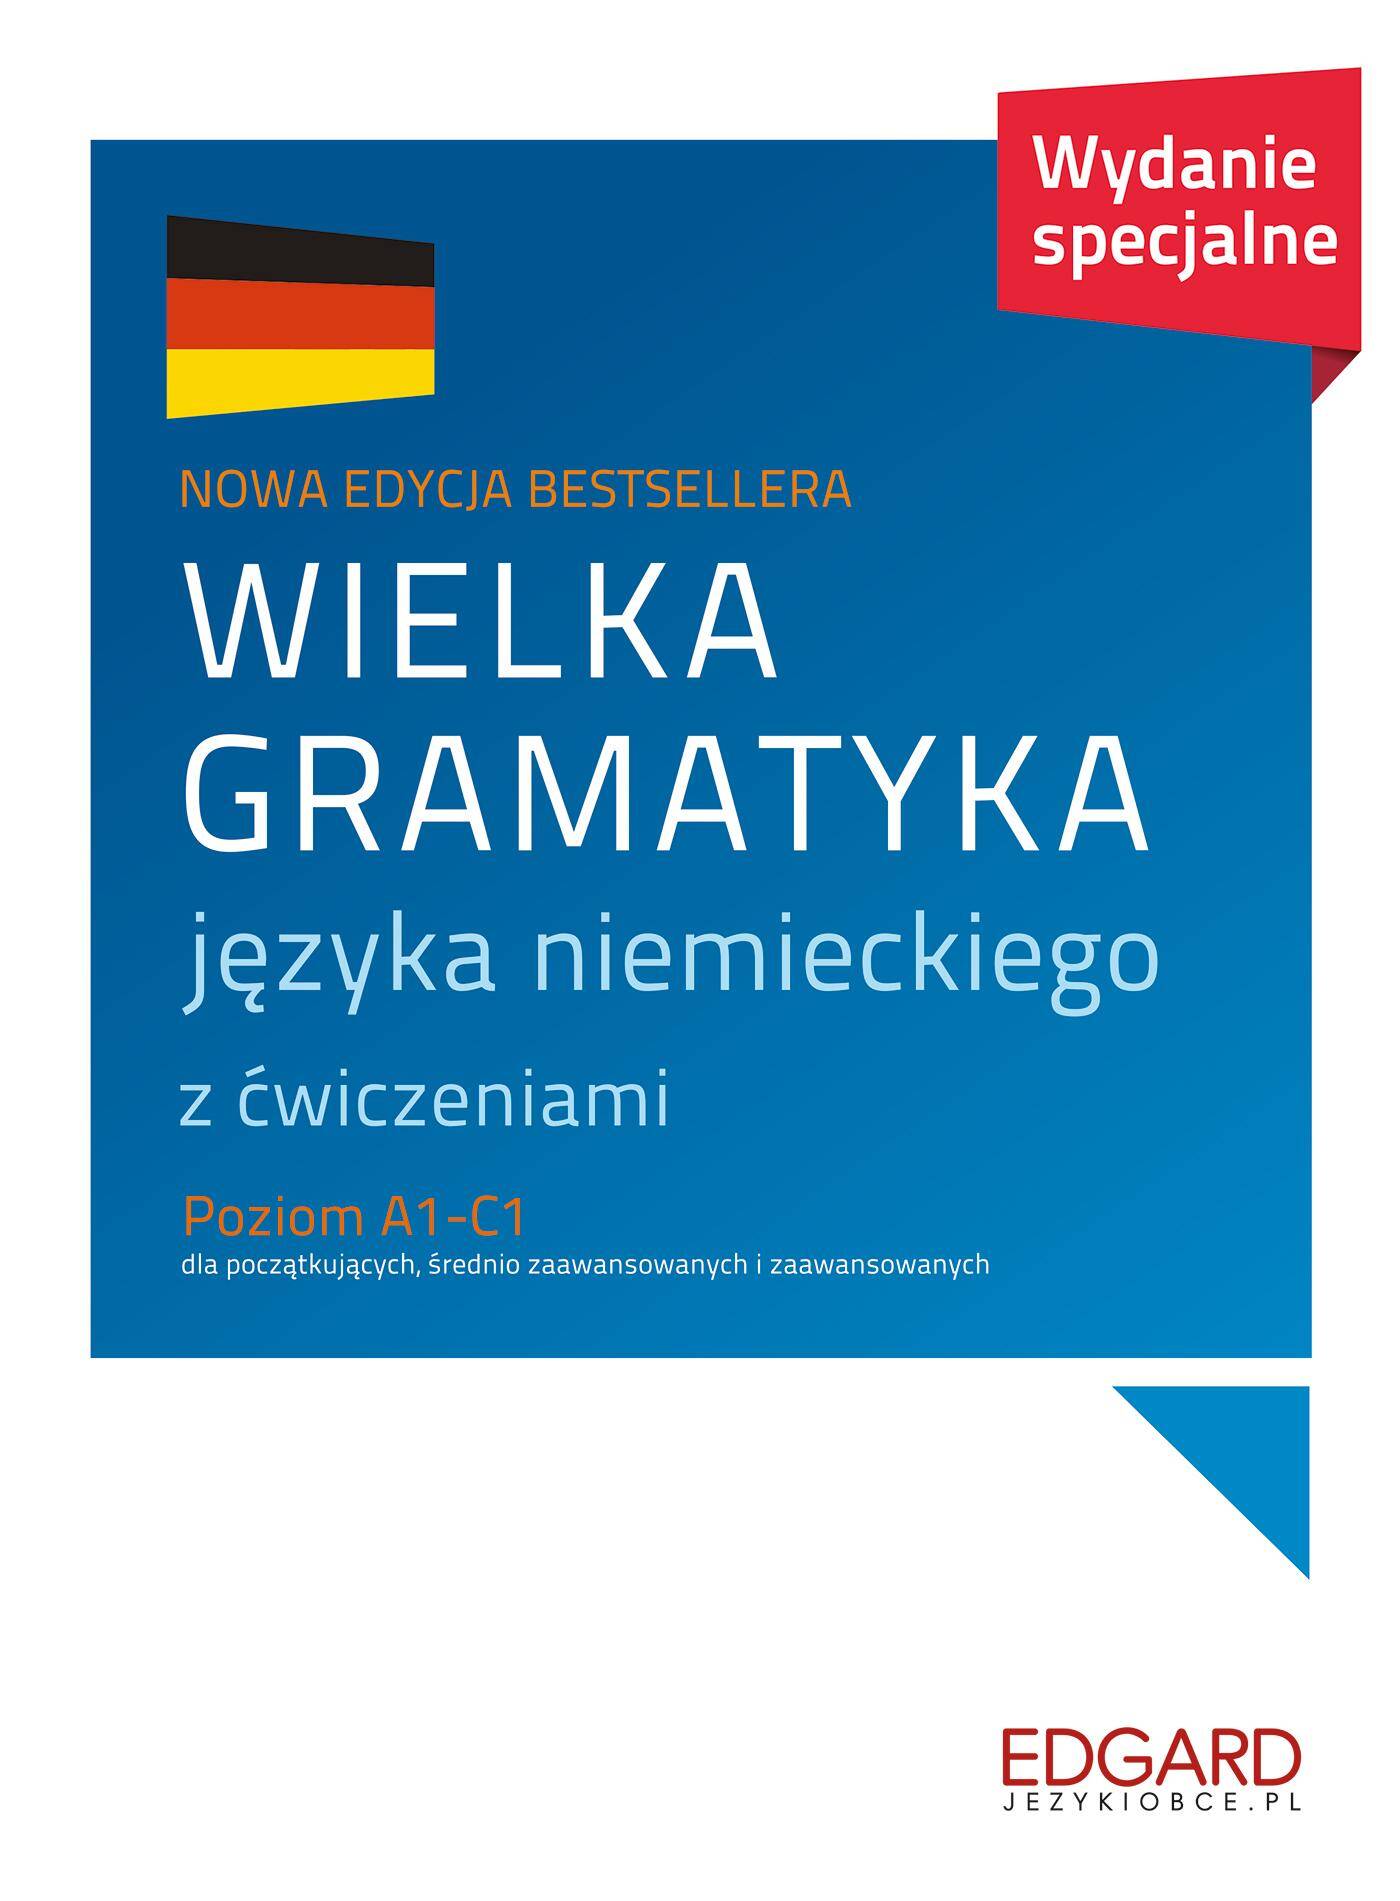 Wielka gramatyka języka niemieckiego Wydanie XXL 2022